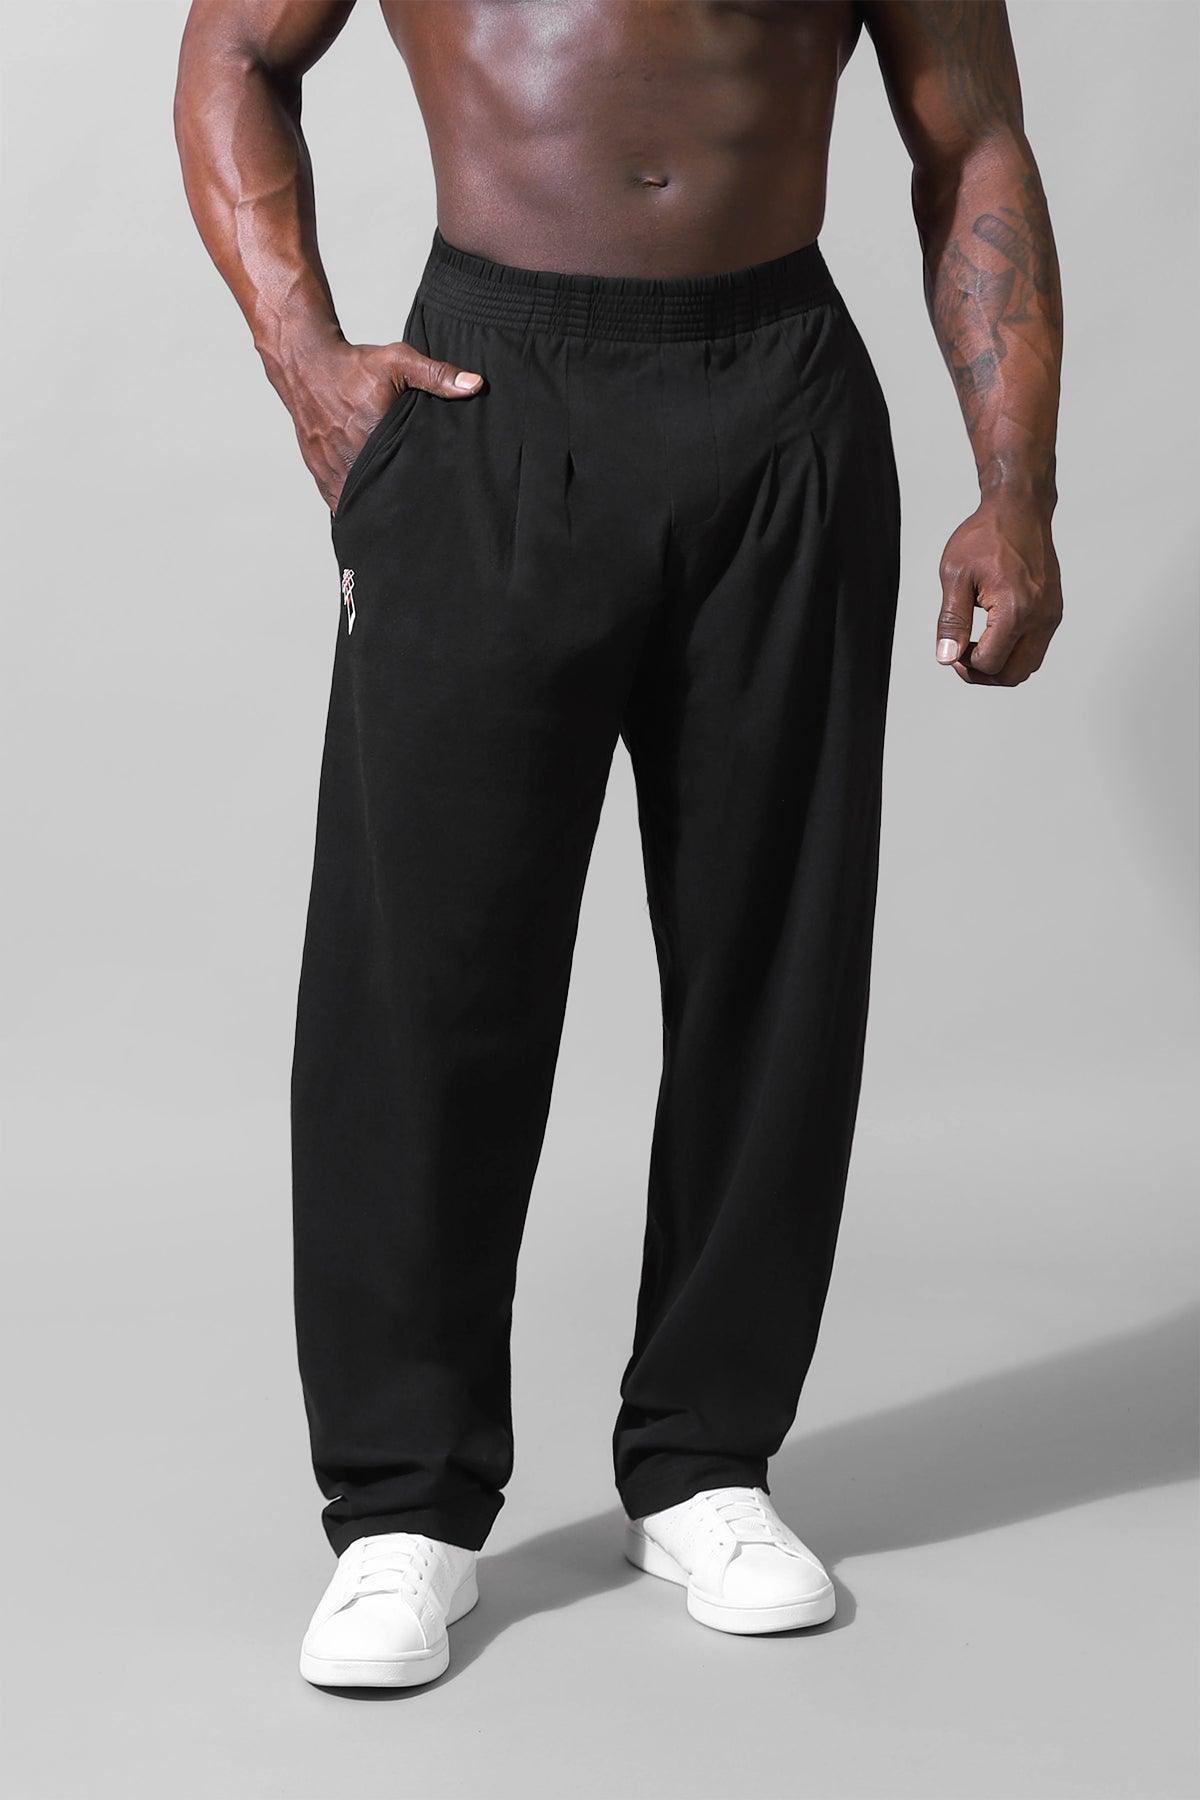 Retro Oversized Bodybuilding Pants - Black